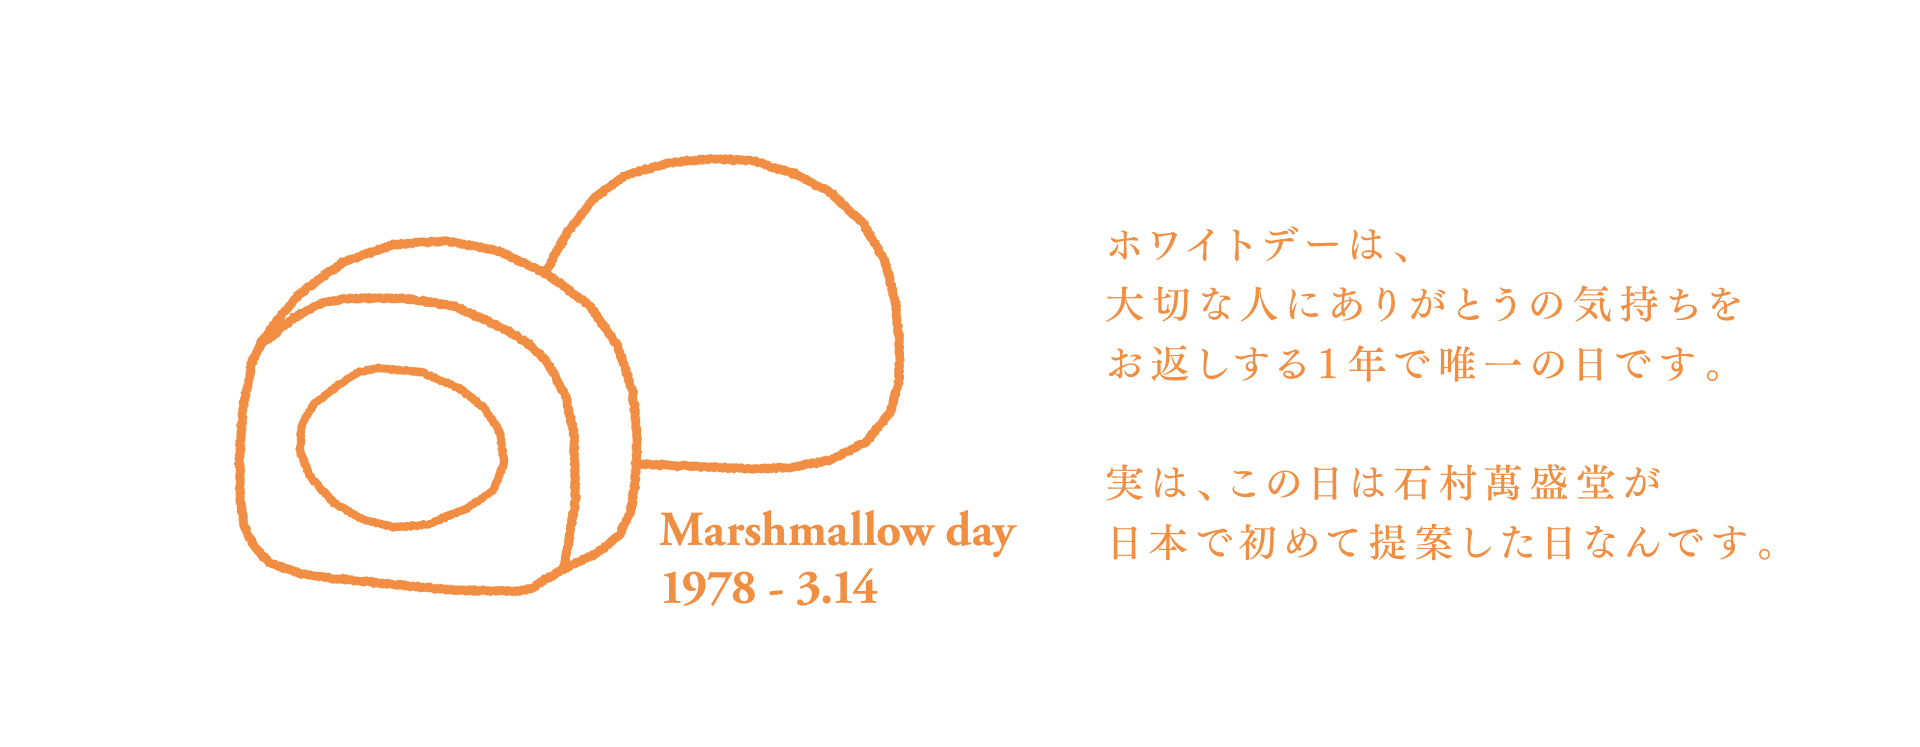 ホワイトデーは、大切な人にありがとうの気持ちをお返しする１年で唯一の日です。実は、この日は石村萬盛堂が日本で初めて提案した日なんです。